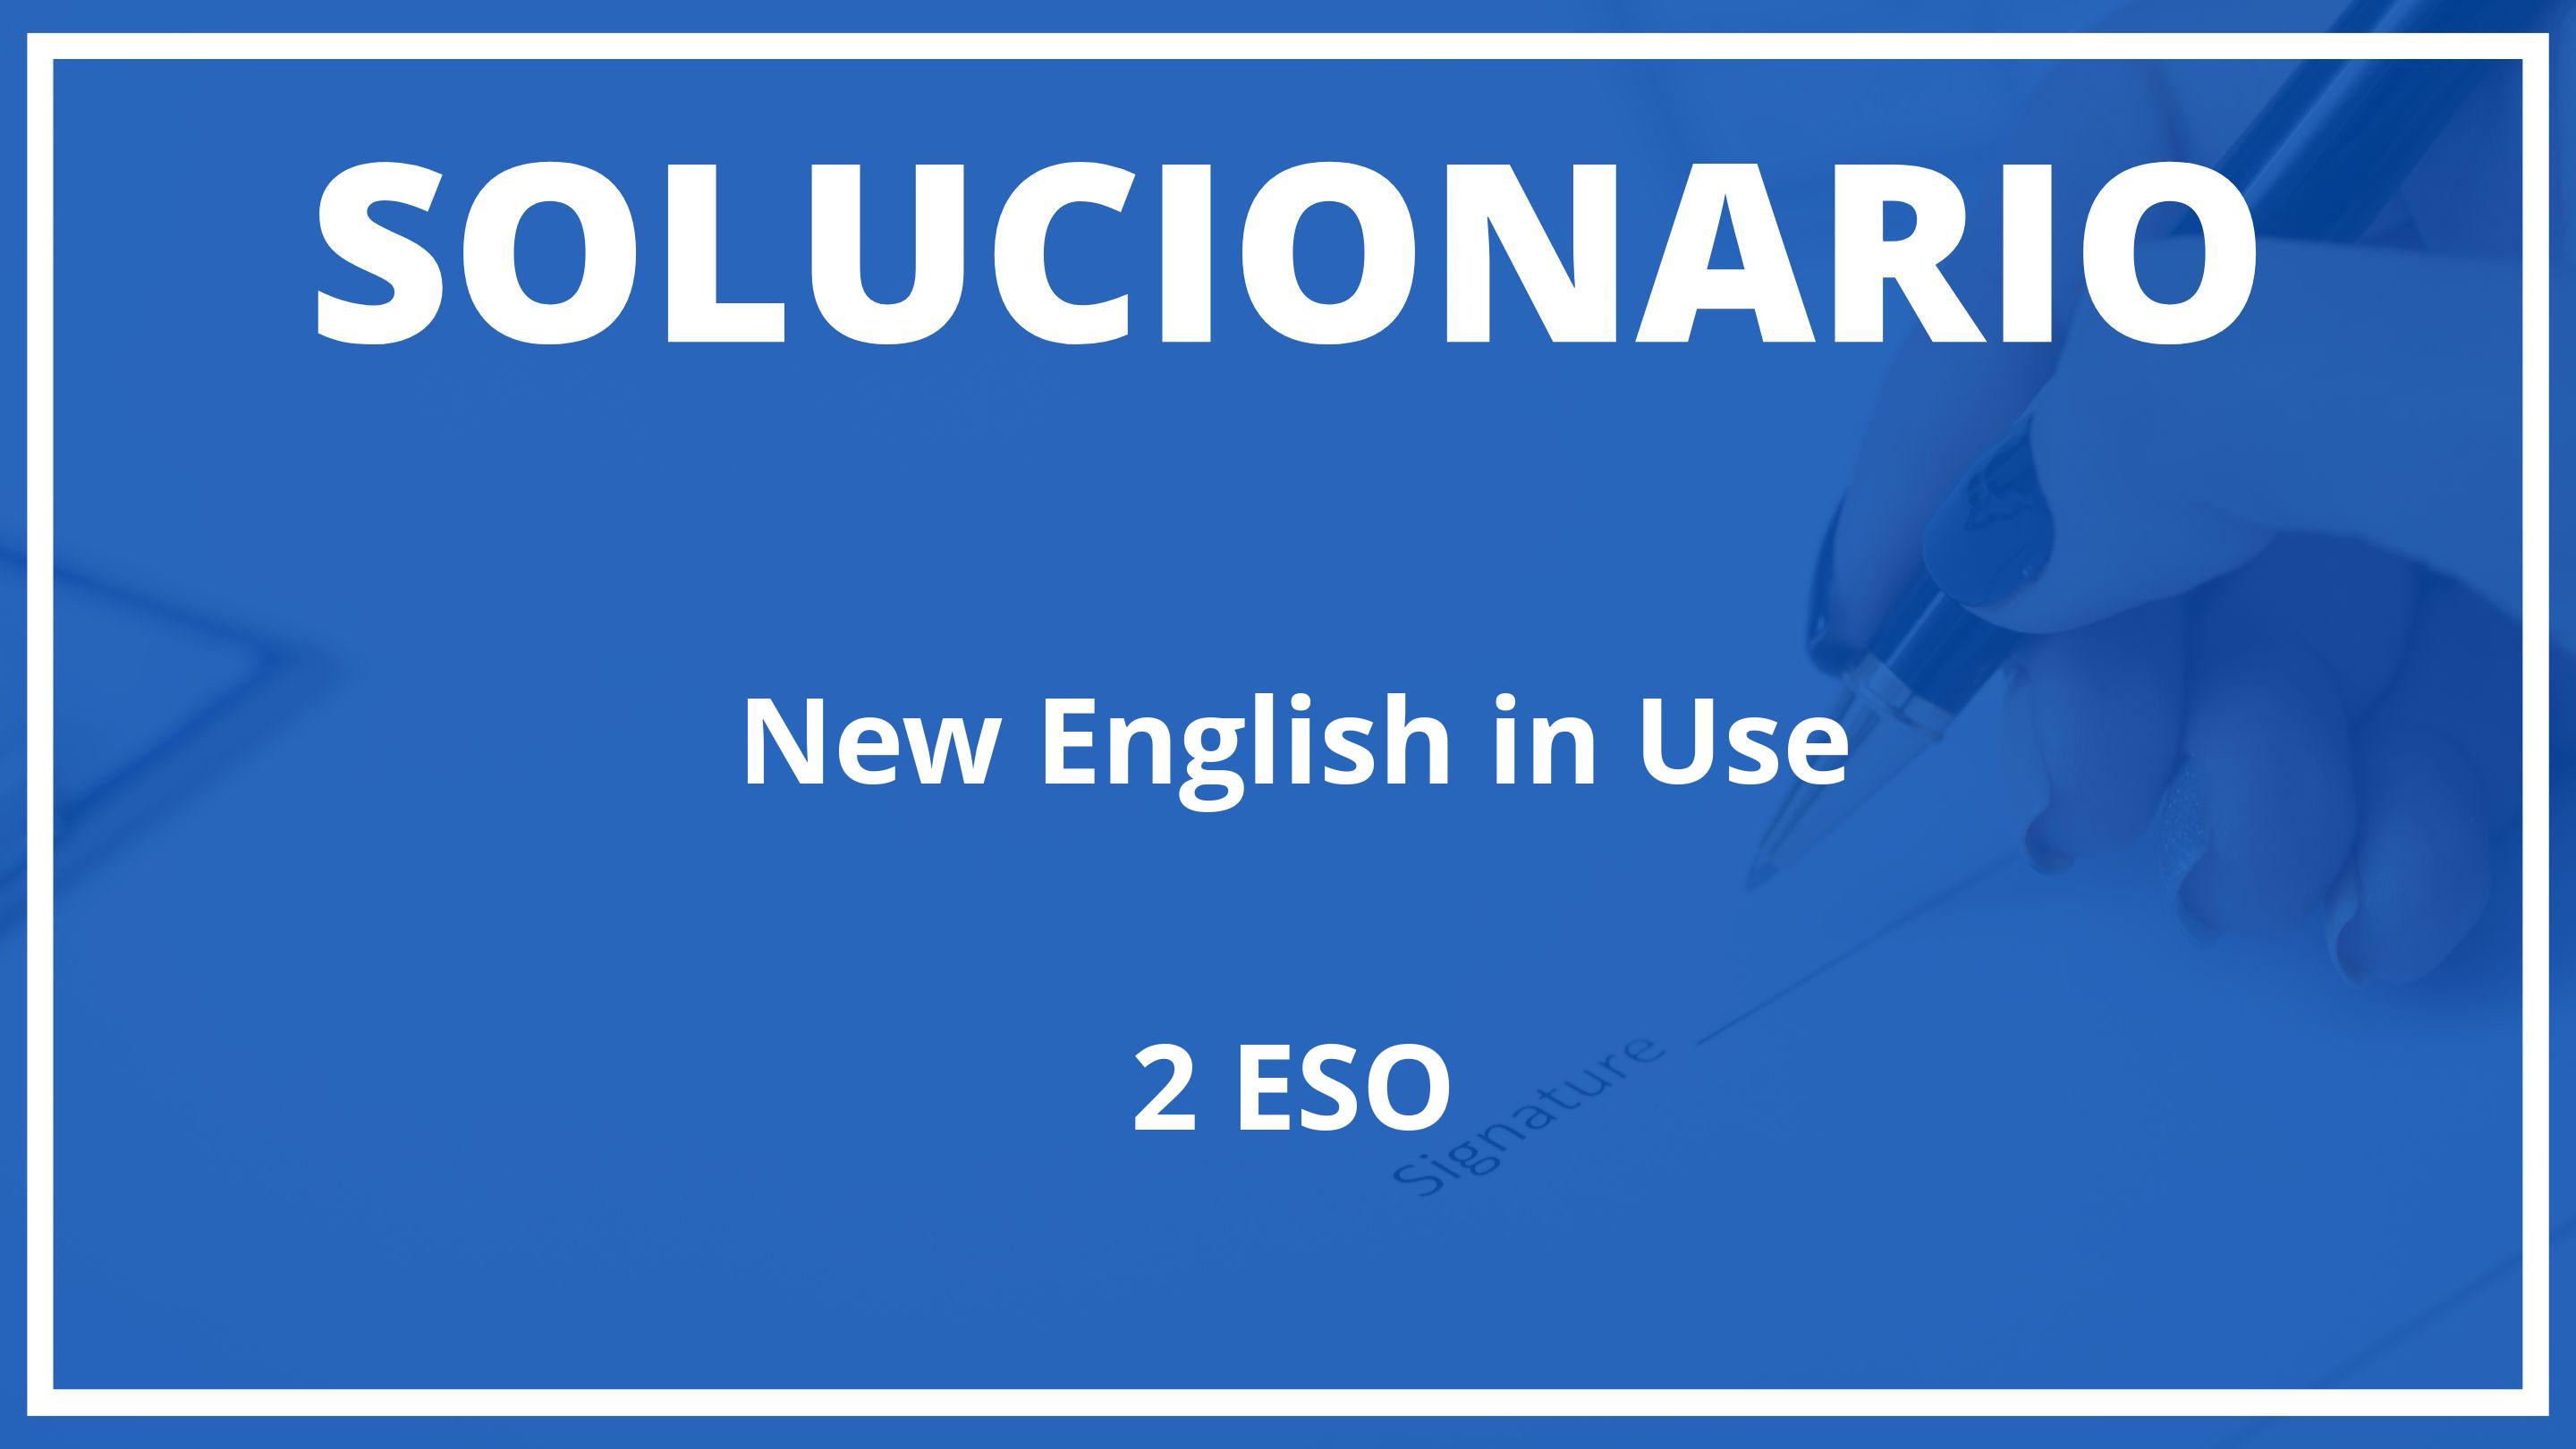 Solucionario New English in Use Burlington Books 2 ESO